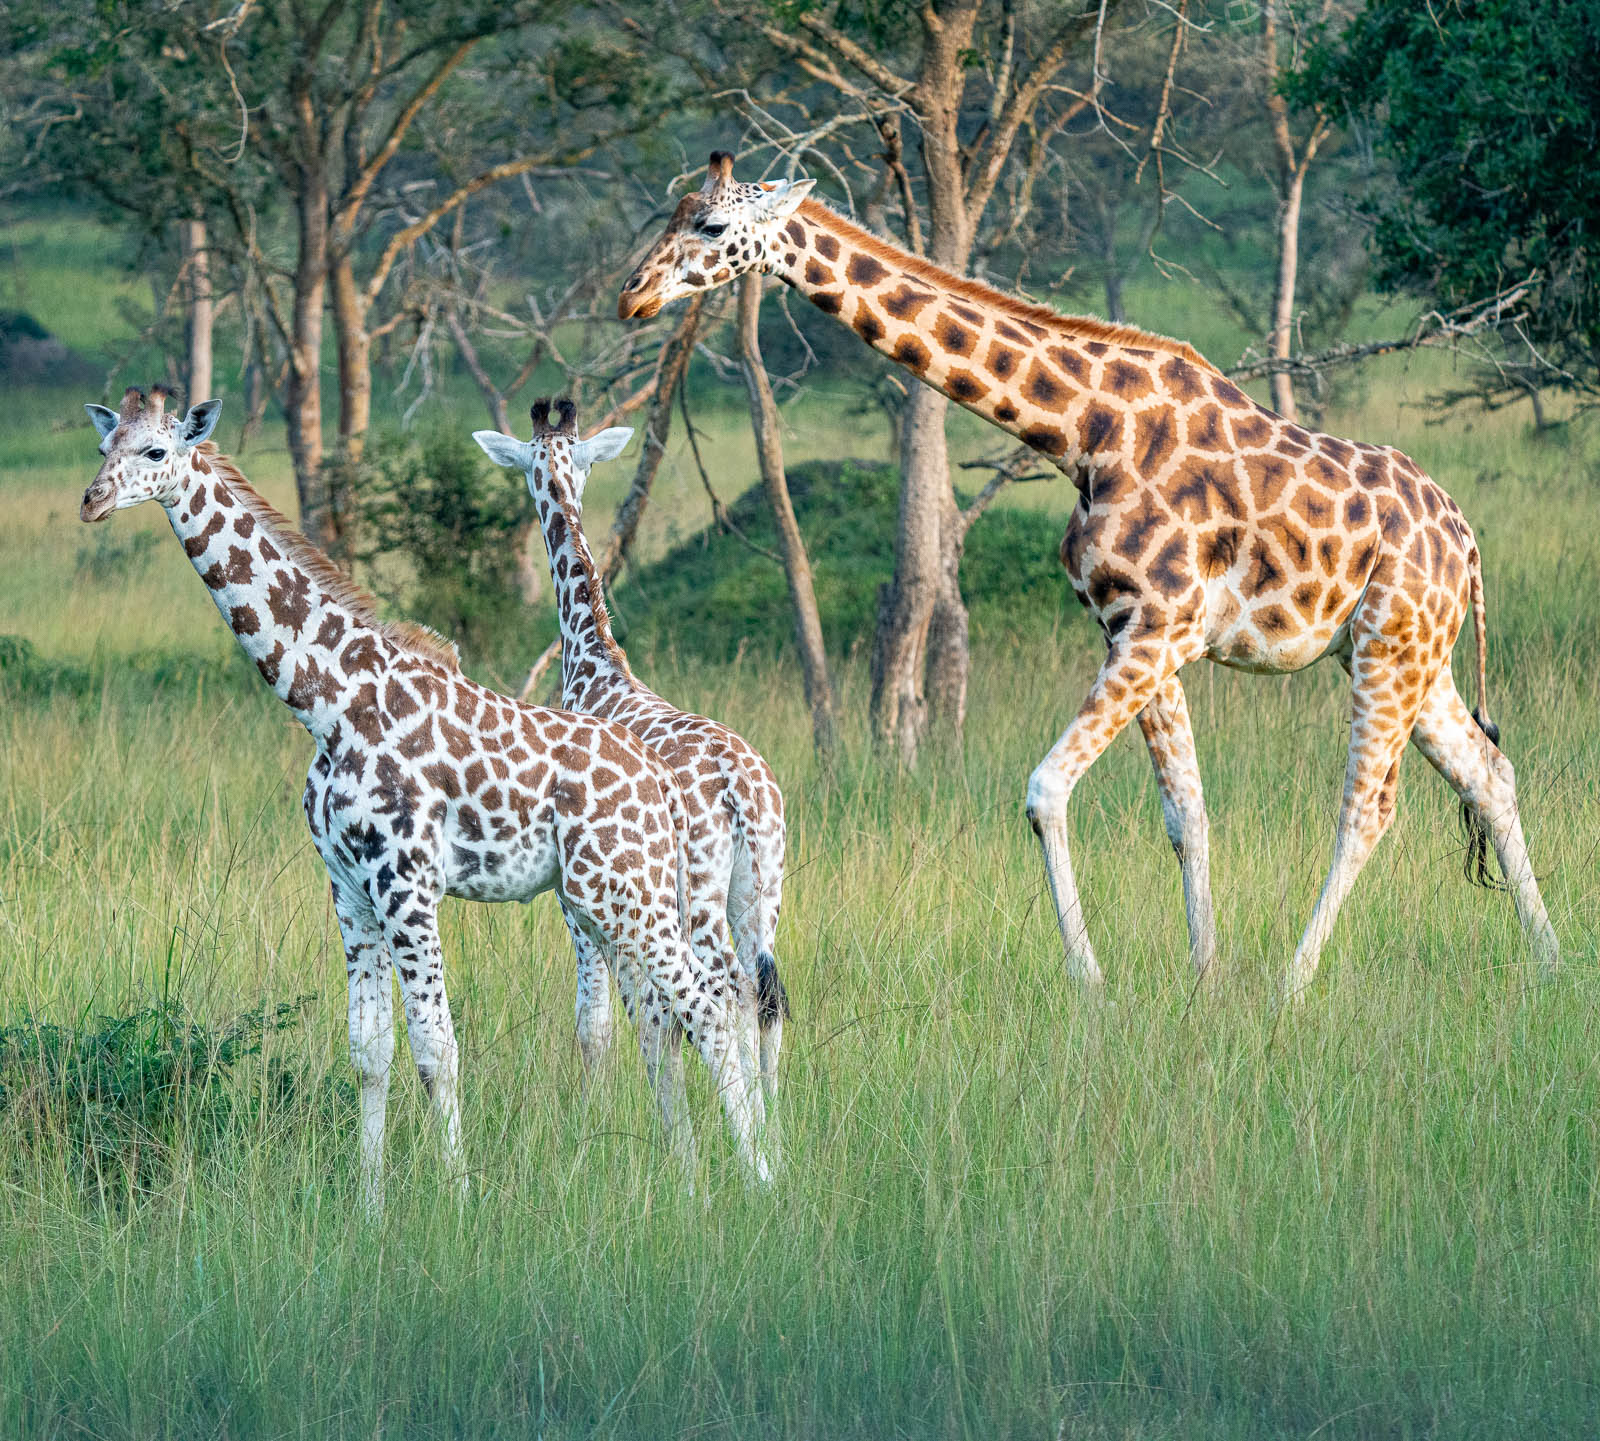 giraffe with babies